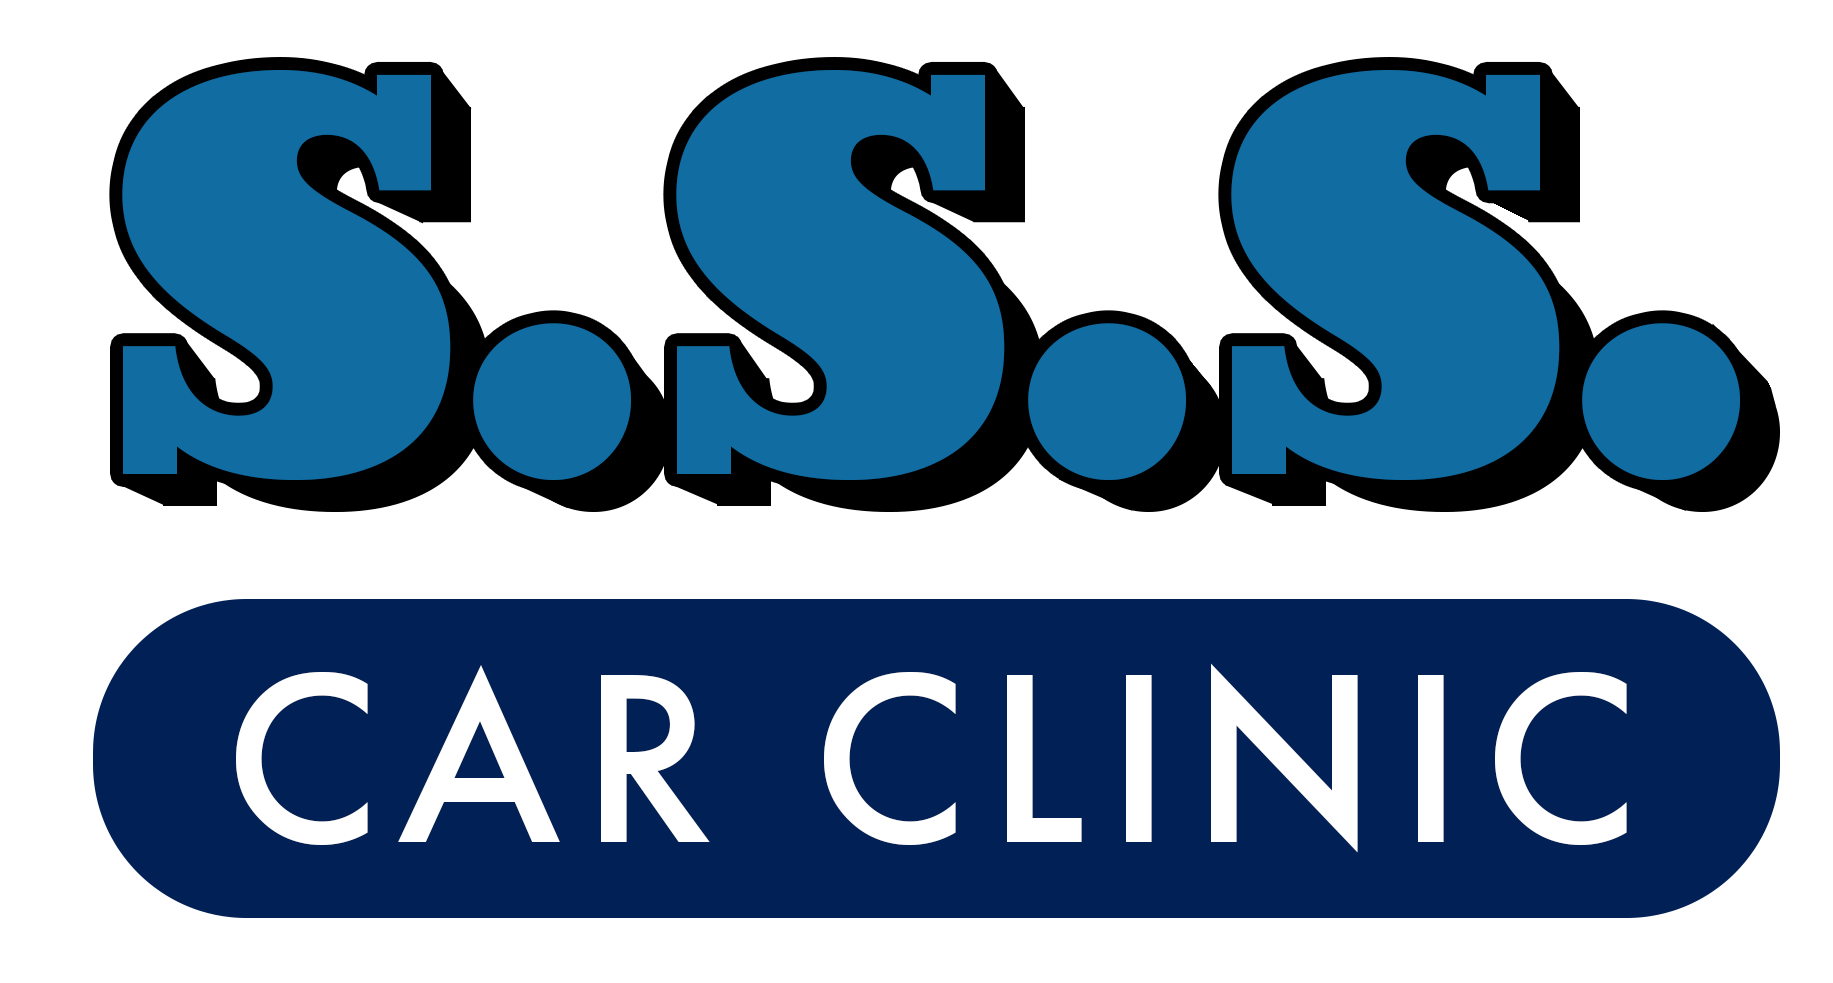 SSS Car Clinic